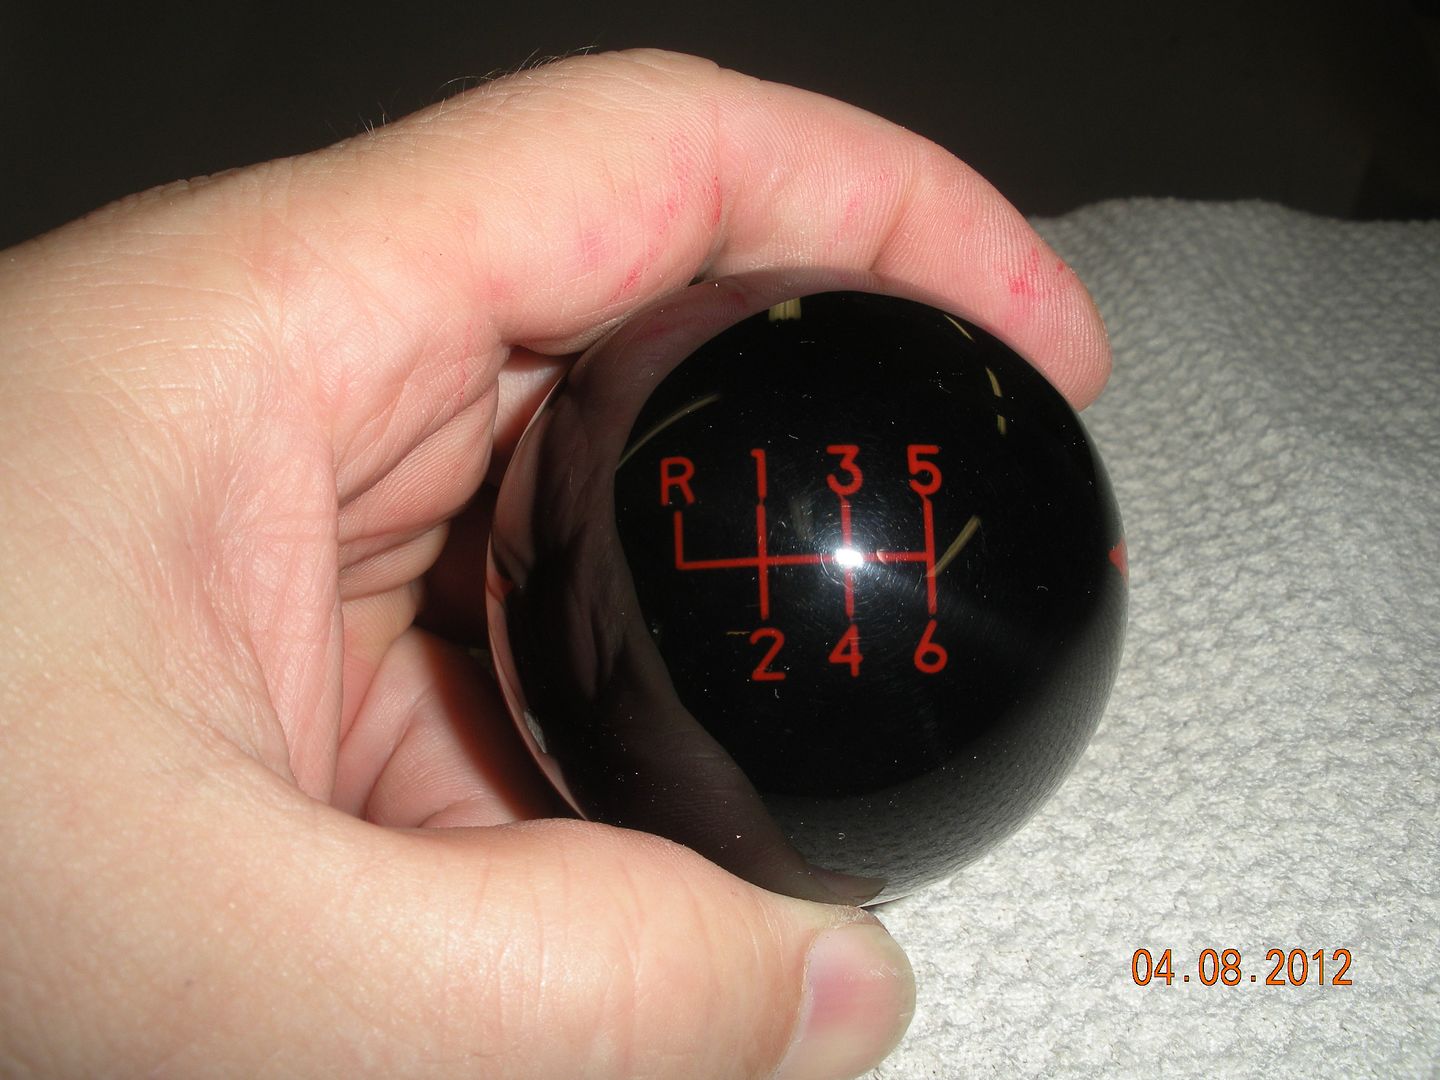 shiftballs2004.jpg